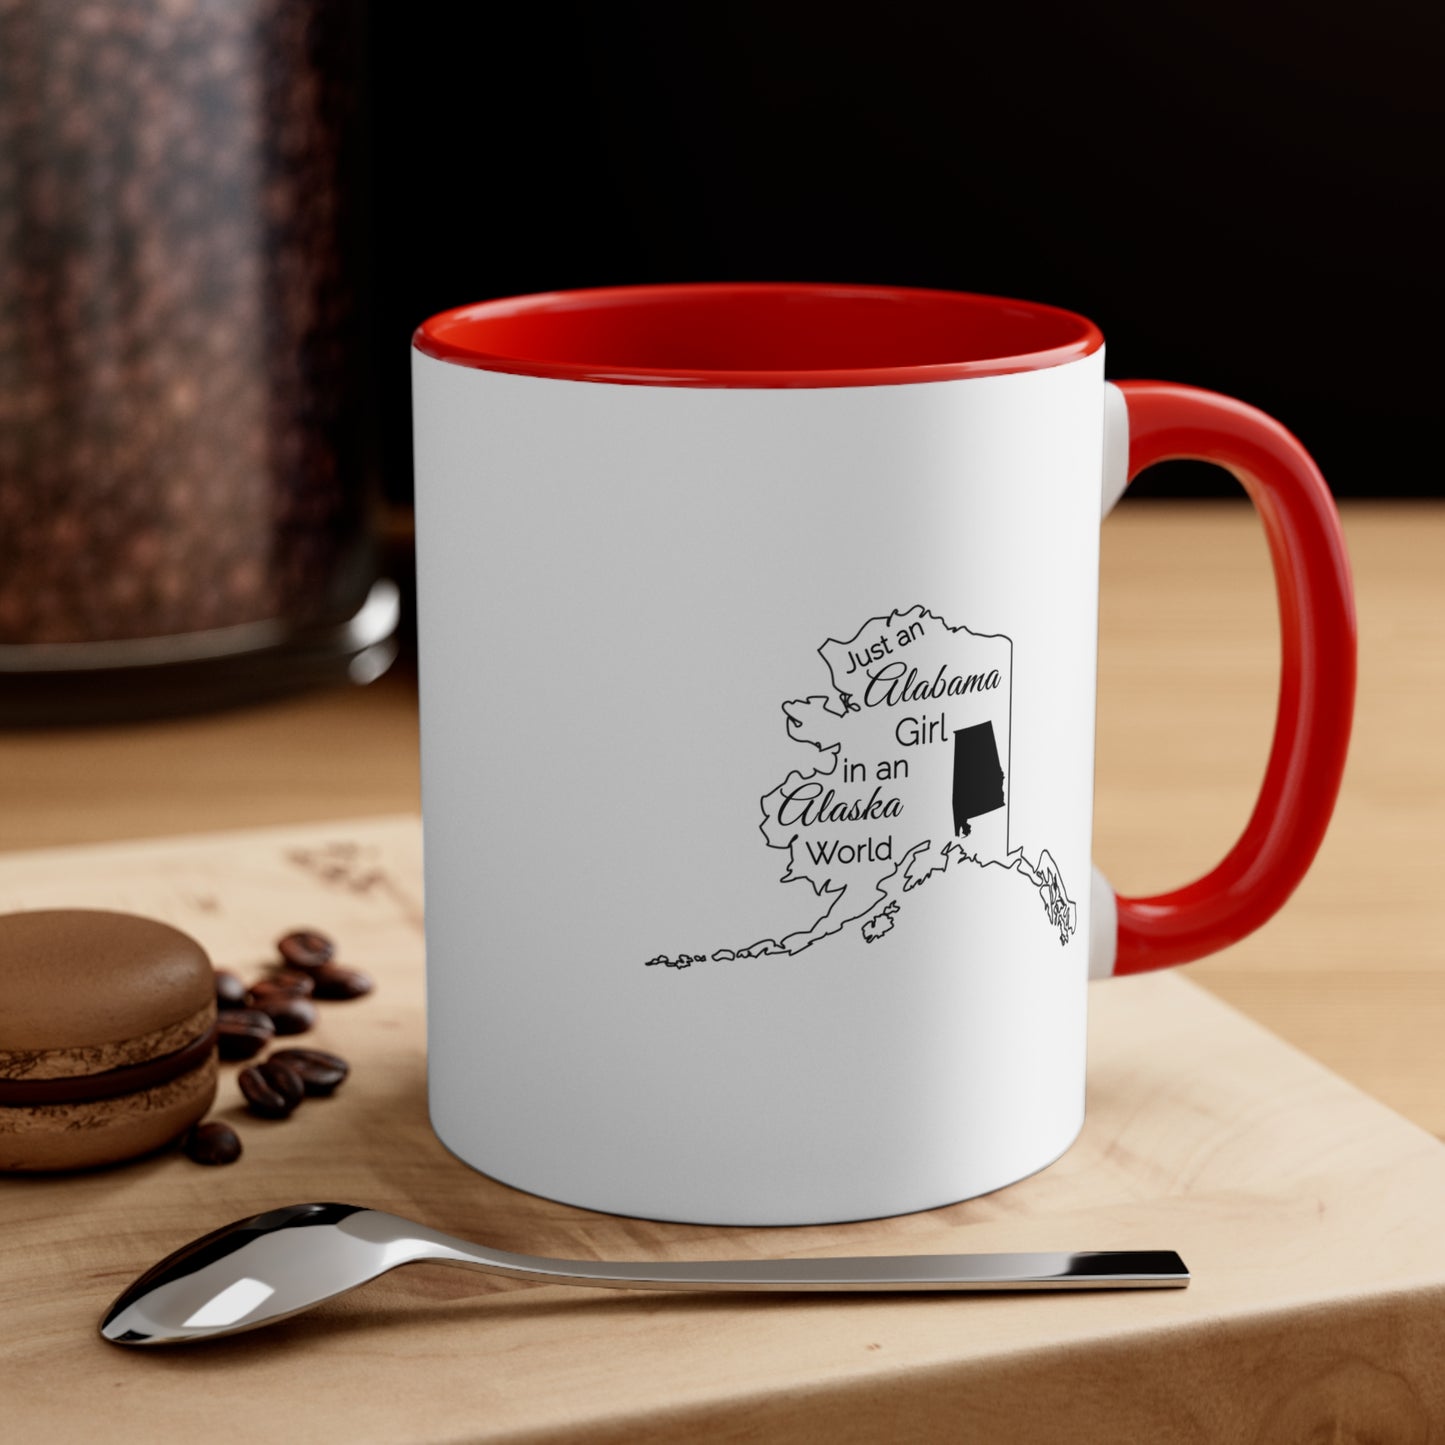 Just an Alabama Girl in an Alabama World Accent Coffee Mug, 11oz